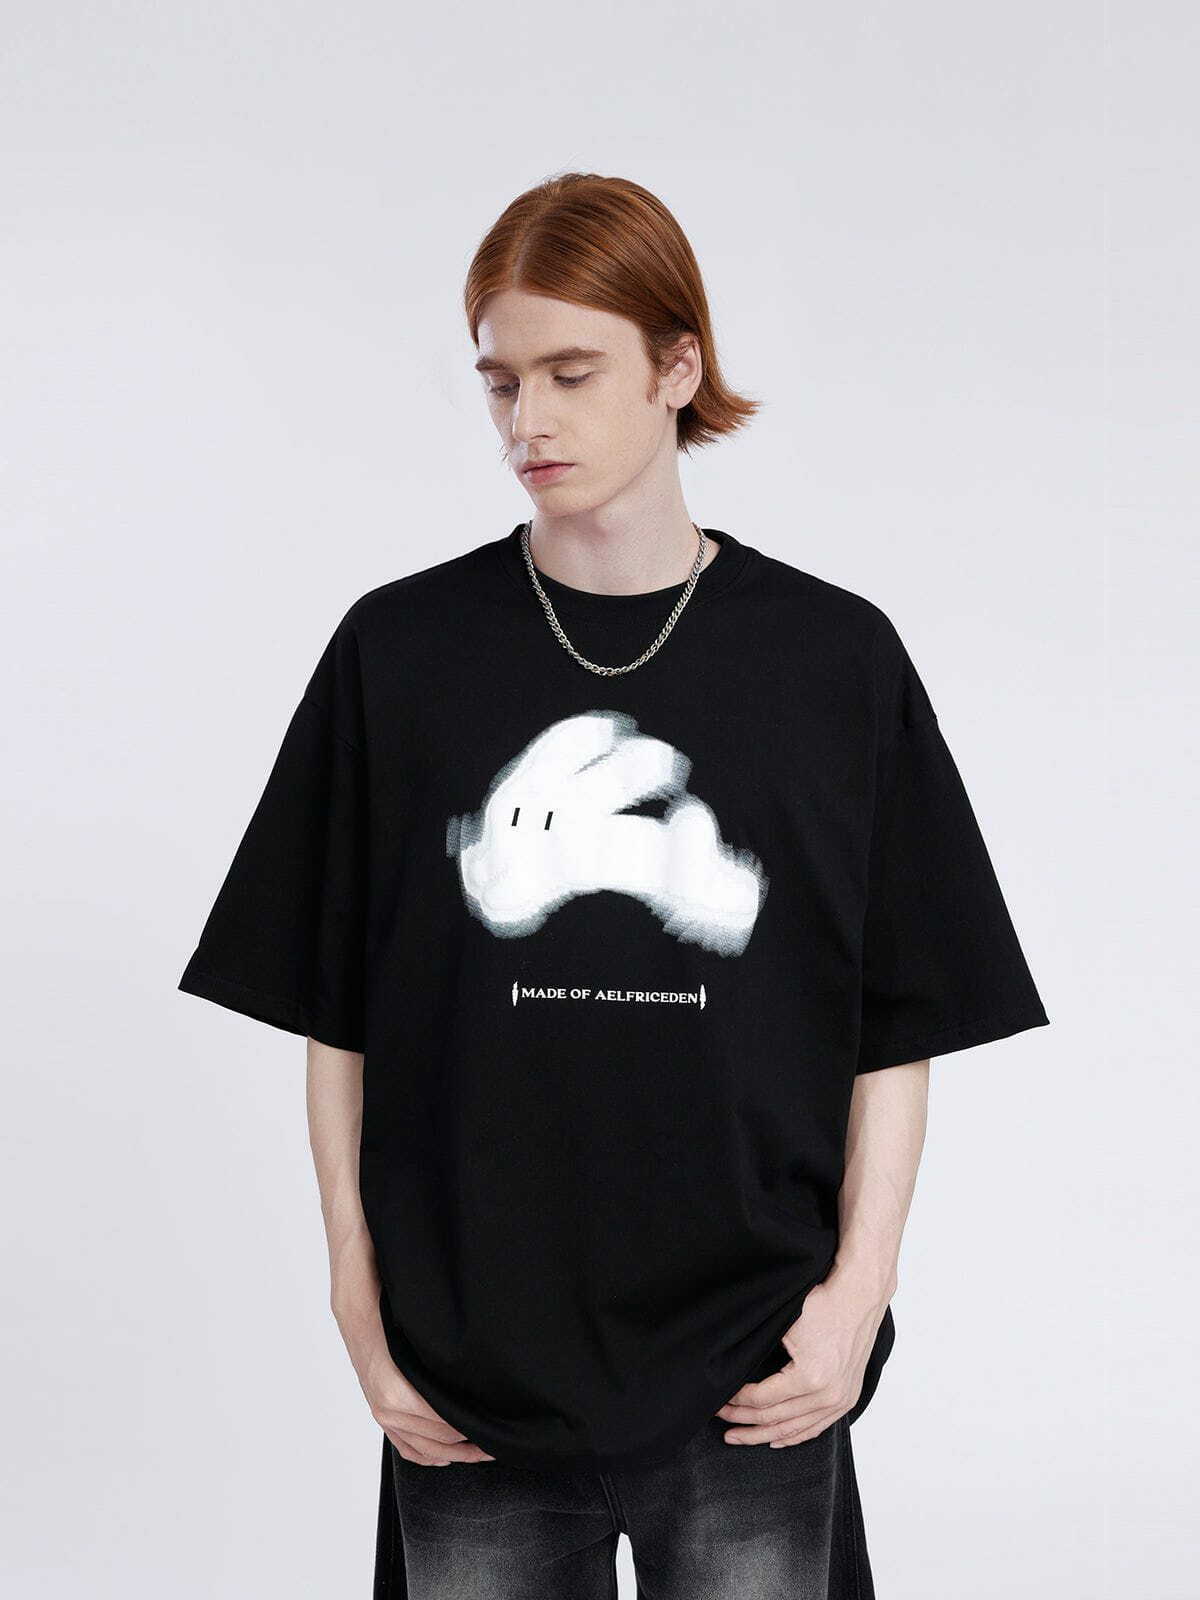 cute rabbit foam print tee   youthful & trendy streetwear 8005